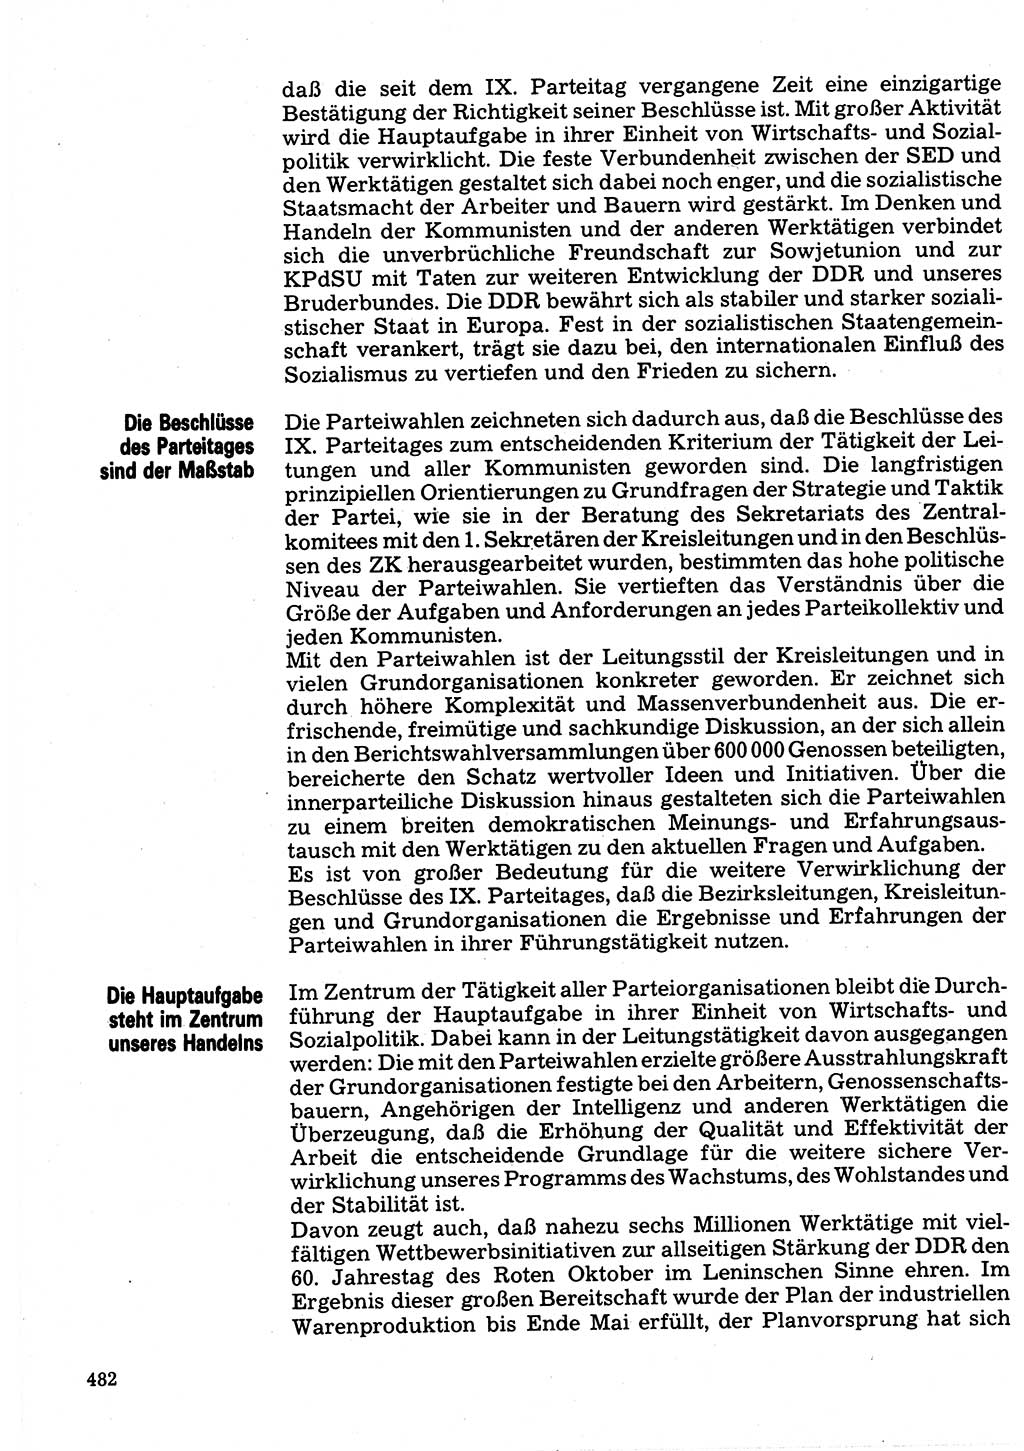 Neuer Weg (NW), Organ des Zentralkomitees (ZK) der SED (Sozialistische Einheitspartei Deutschlands) für Fragen des Parteilebens, 32. Jahrgang [Deutsche Demokratische Republik (DDR)] 1977, Seite 482 (NW ZK SED DDR 1977, S. 482)